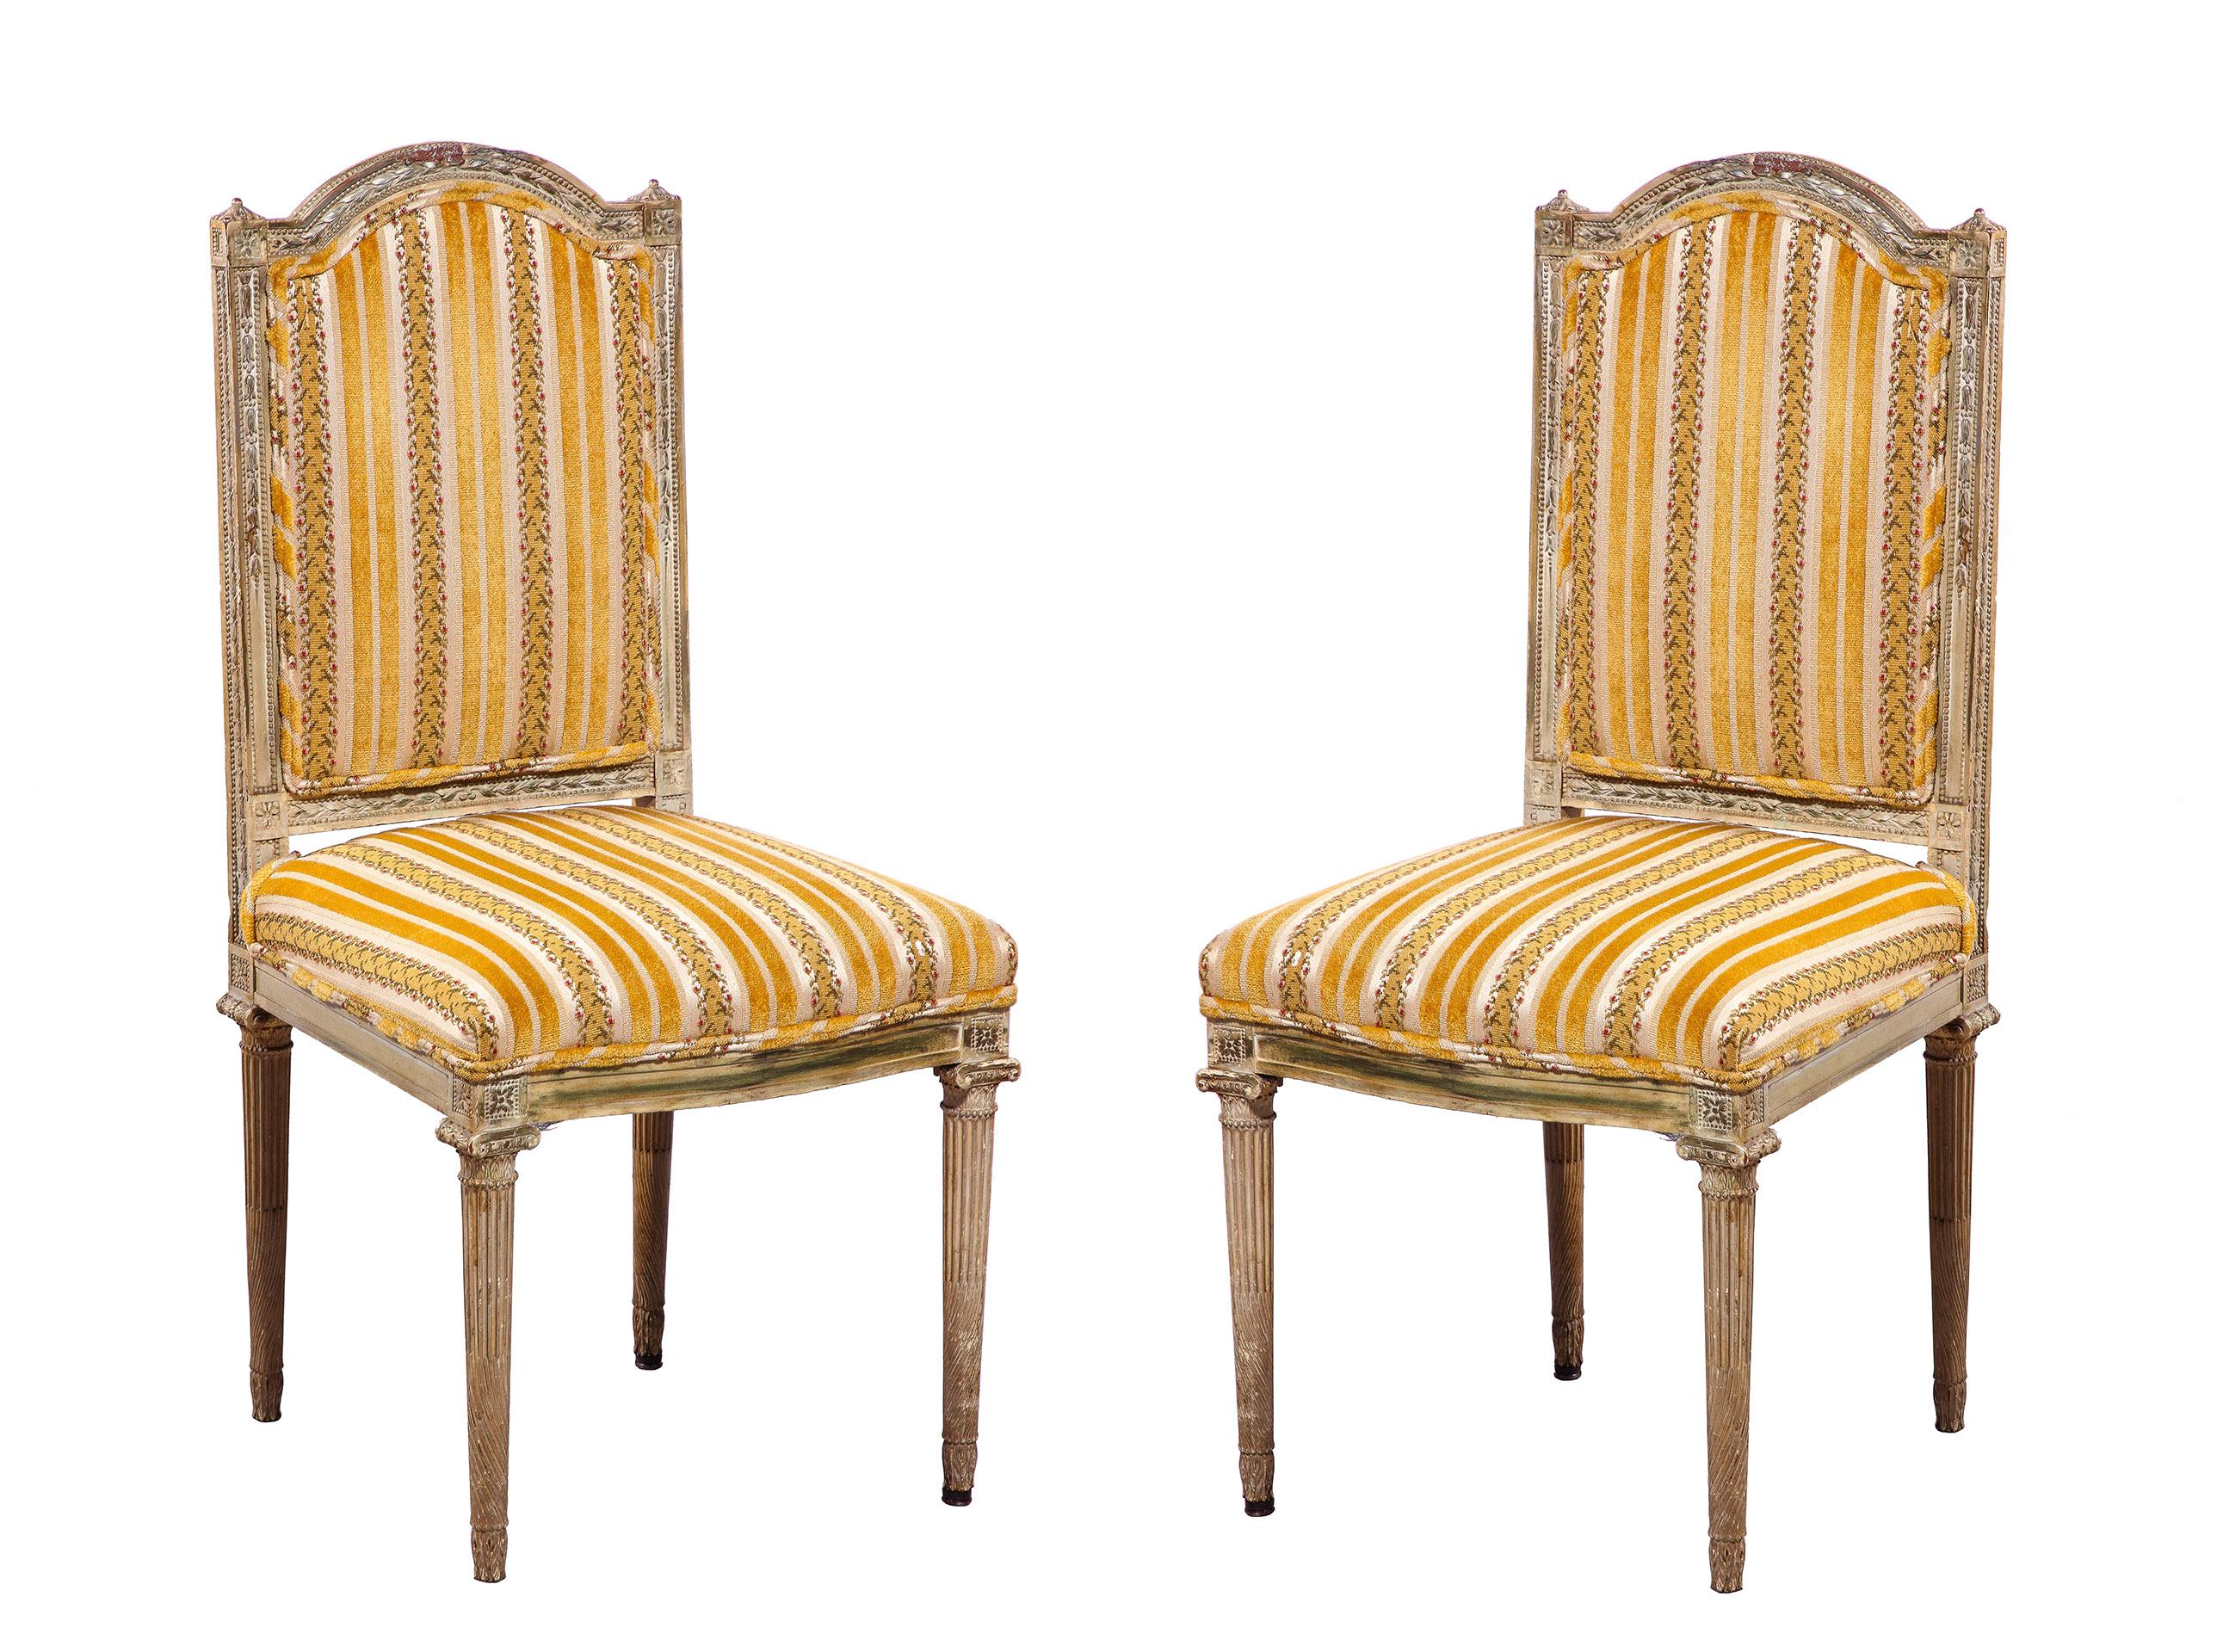 Das feine Paar Louis XVI Beistellstühle mit einem aufwändig geschnitzten Rahmen, der eine gepolsterte Rückenlehne und Sitzfläche mit kannelierten Beinen umgibt, hat eine schöne verblasste Patina.